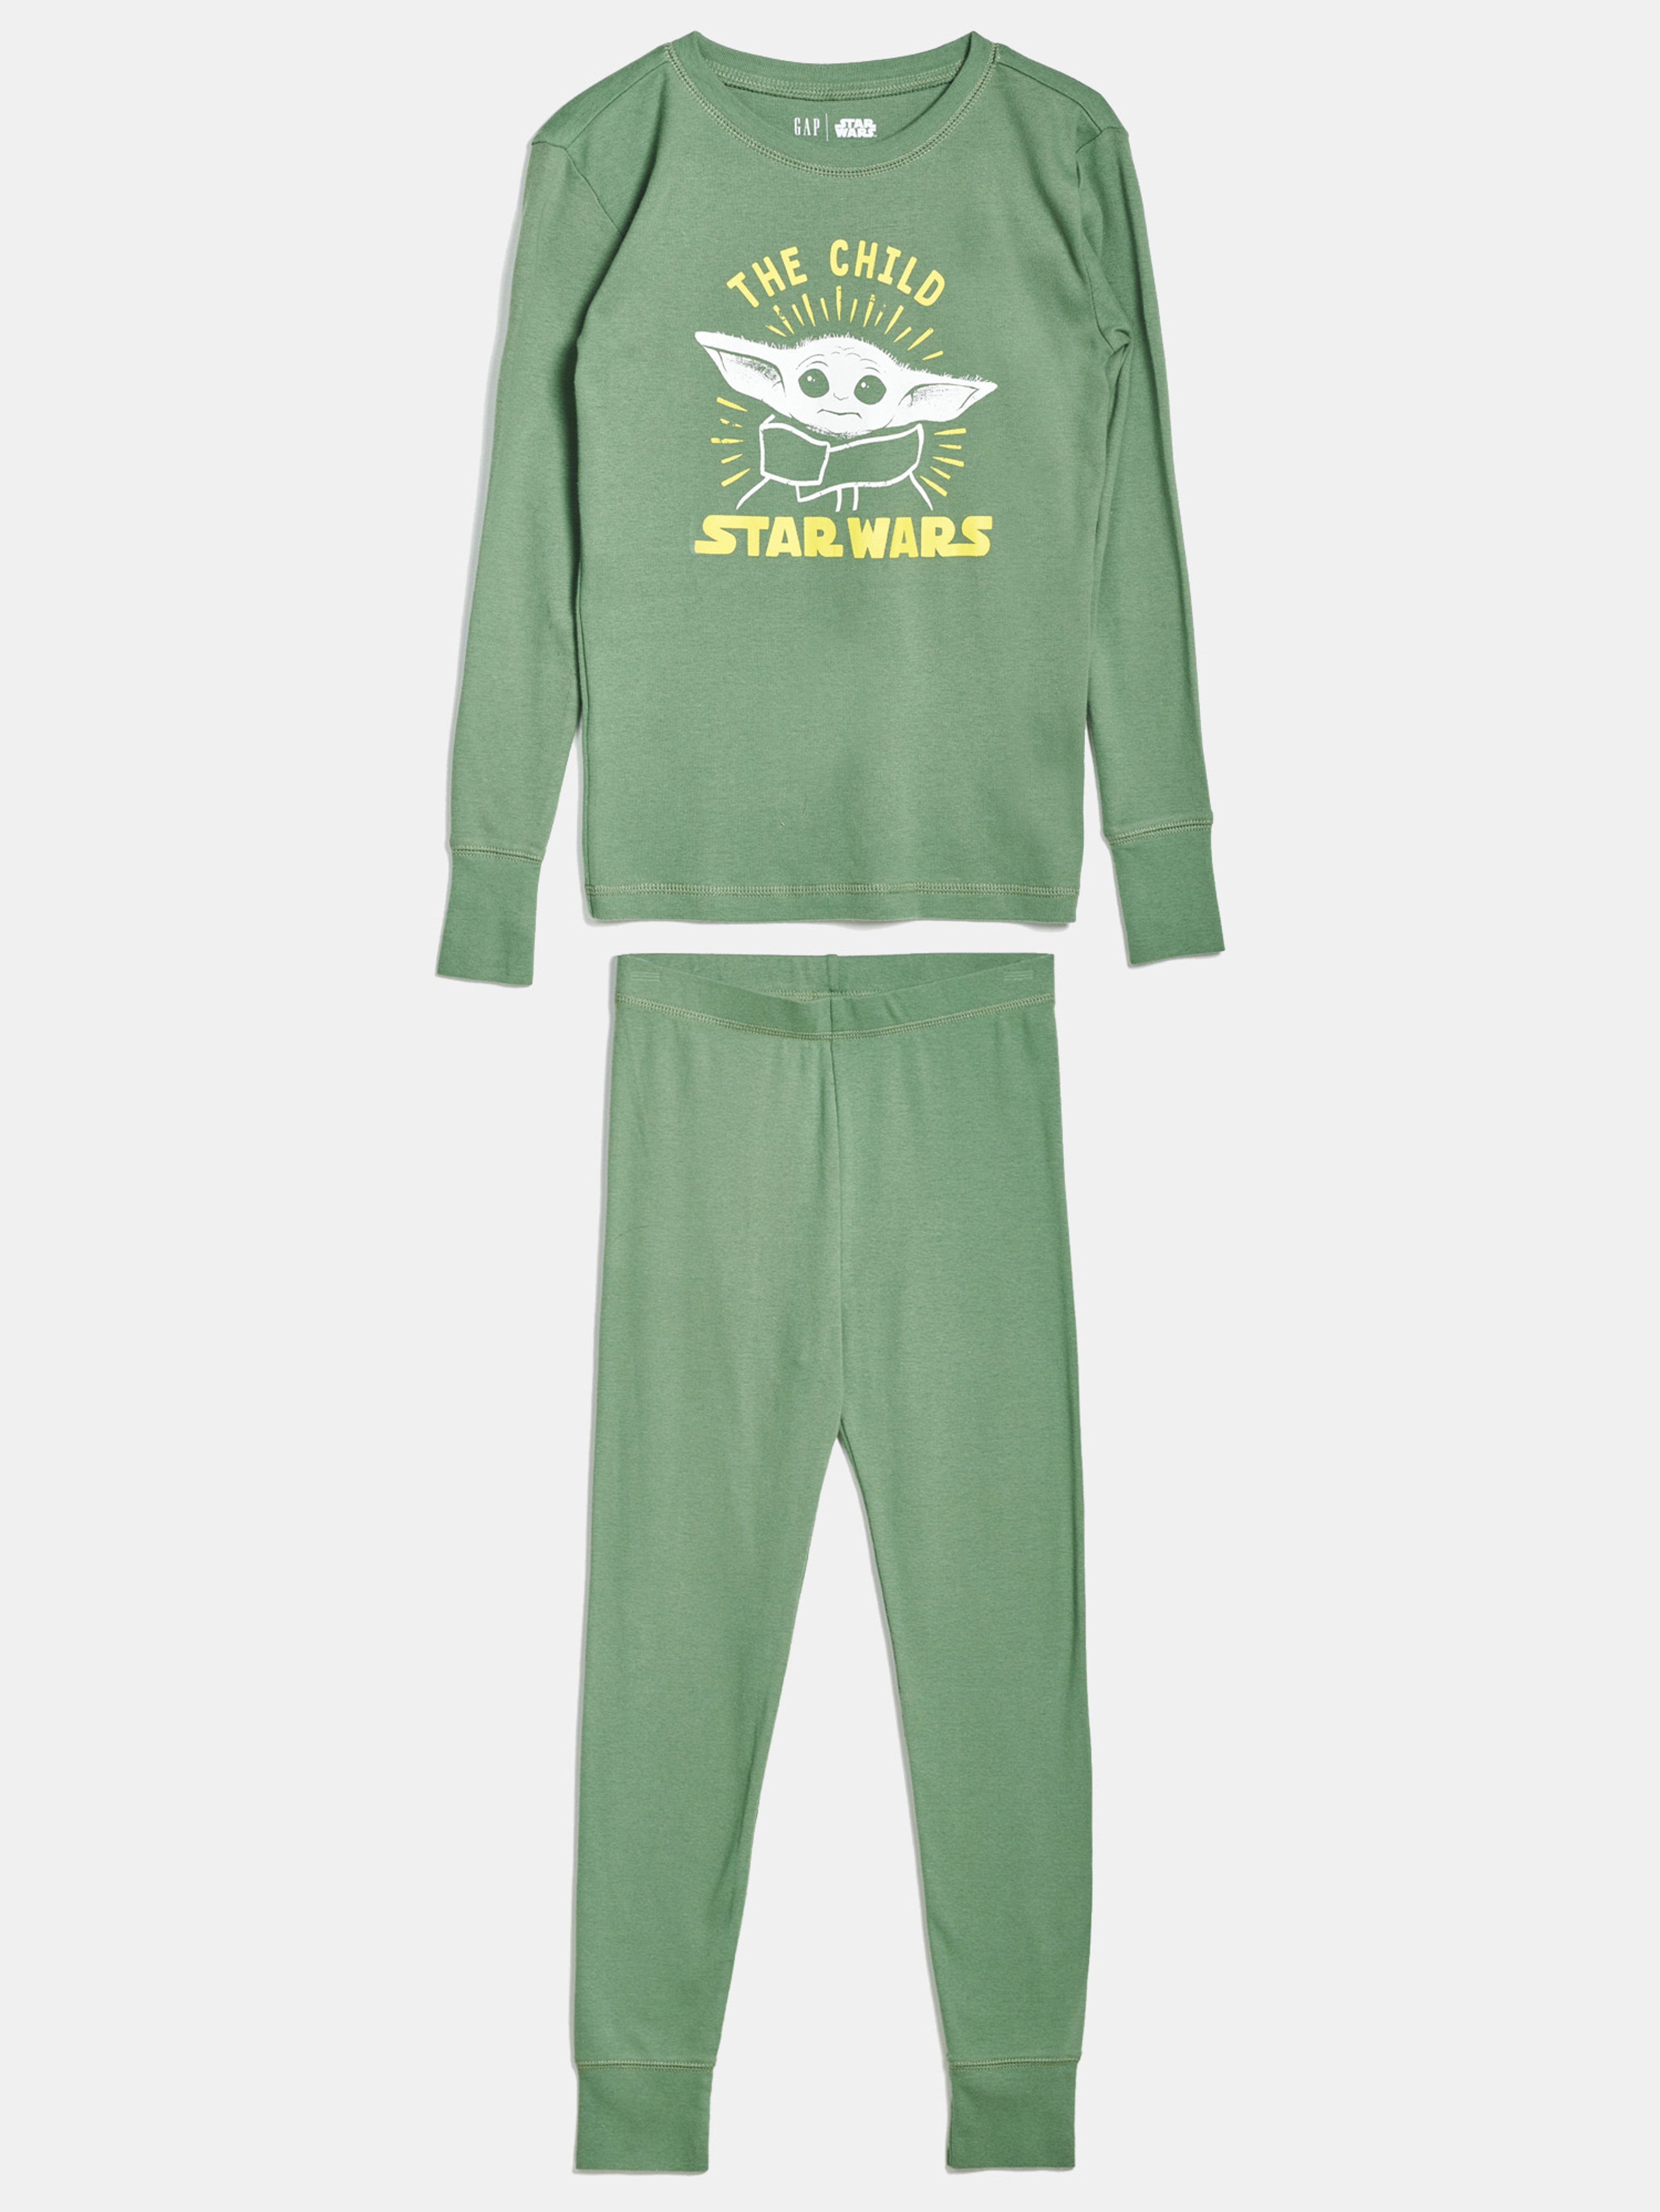 Kinderpyjama GAP & Star Wars Yoda